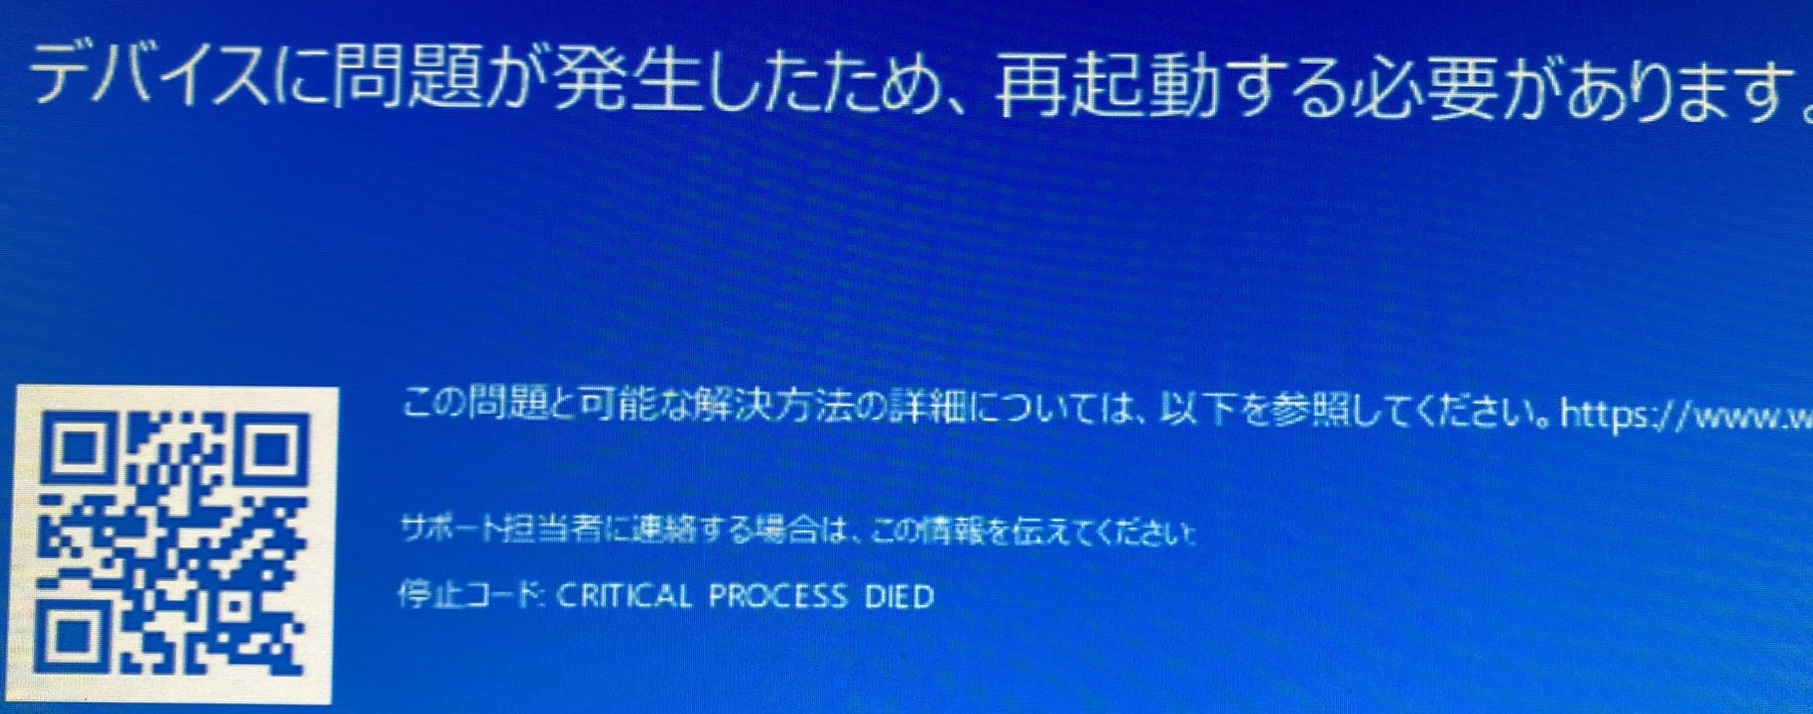 【パソコン修理】Windows10などで発生するブルースクリーンエラー「CRITICAL_PROCESS_DIED」